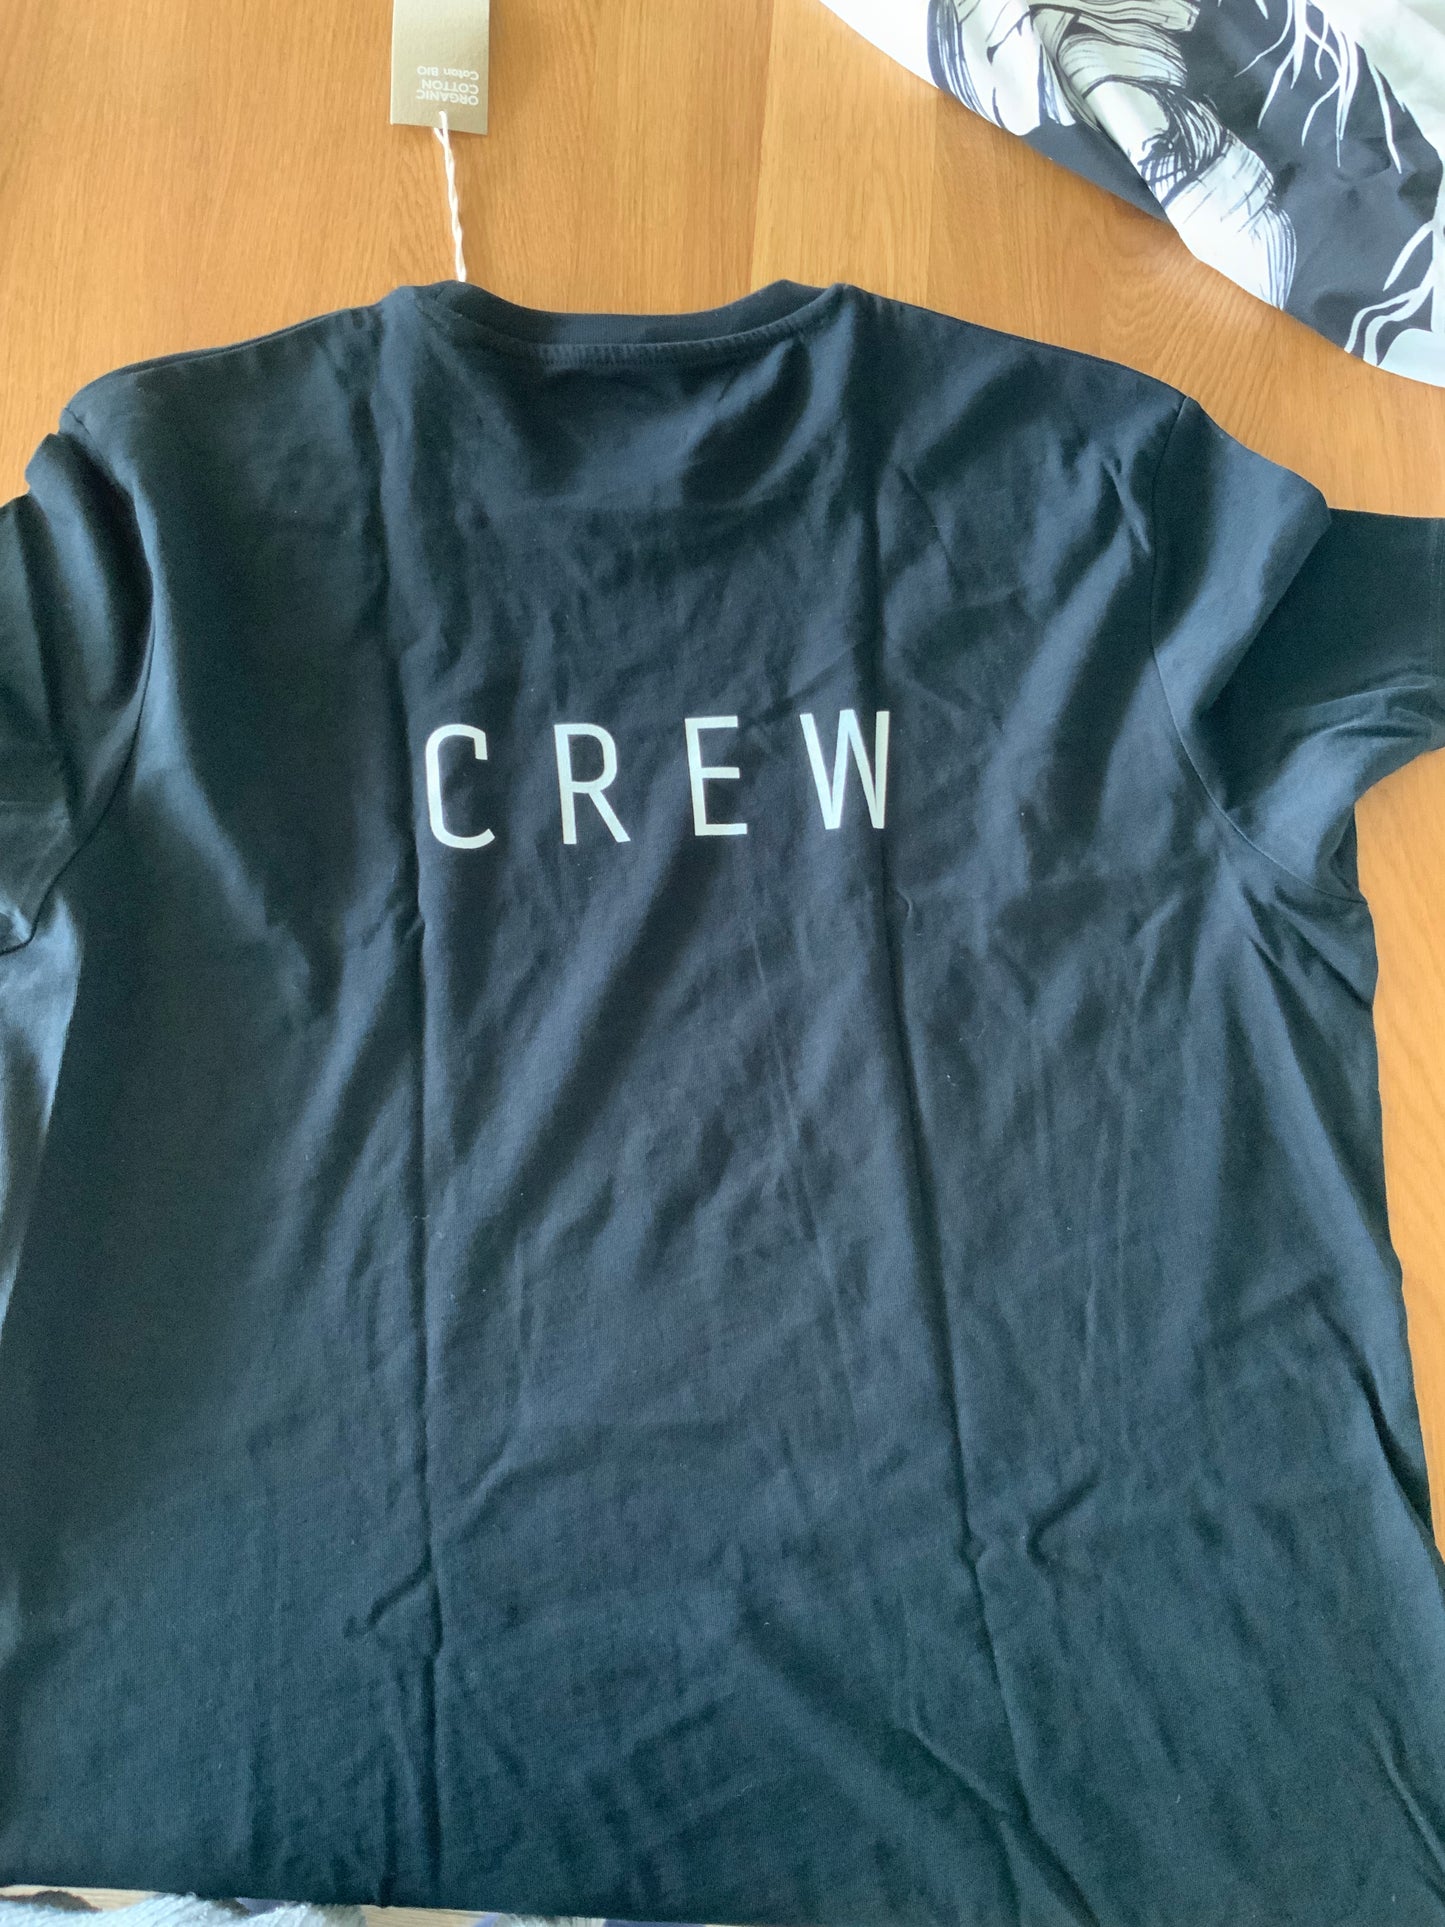 T-shirt en coton bio "Tortue" ;  taille L avec "crew" inscrit dans le dos) (façonné et imprimé en France)